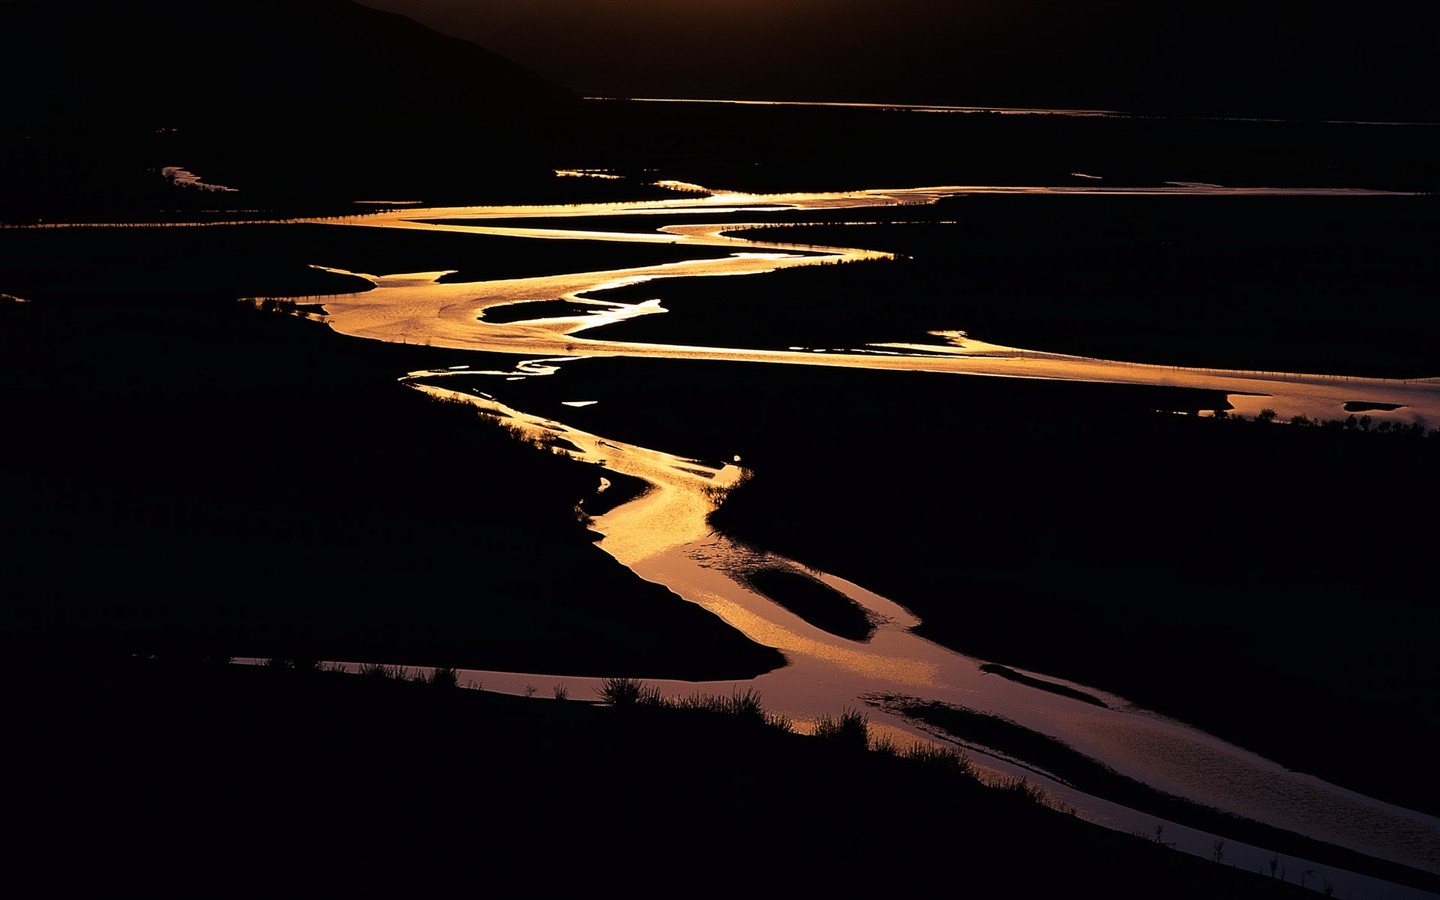 Fond d'écran paysage exquis chinois #12 - 1440x900